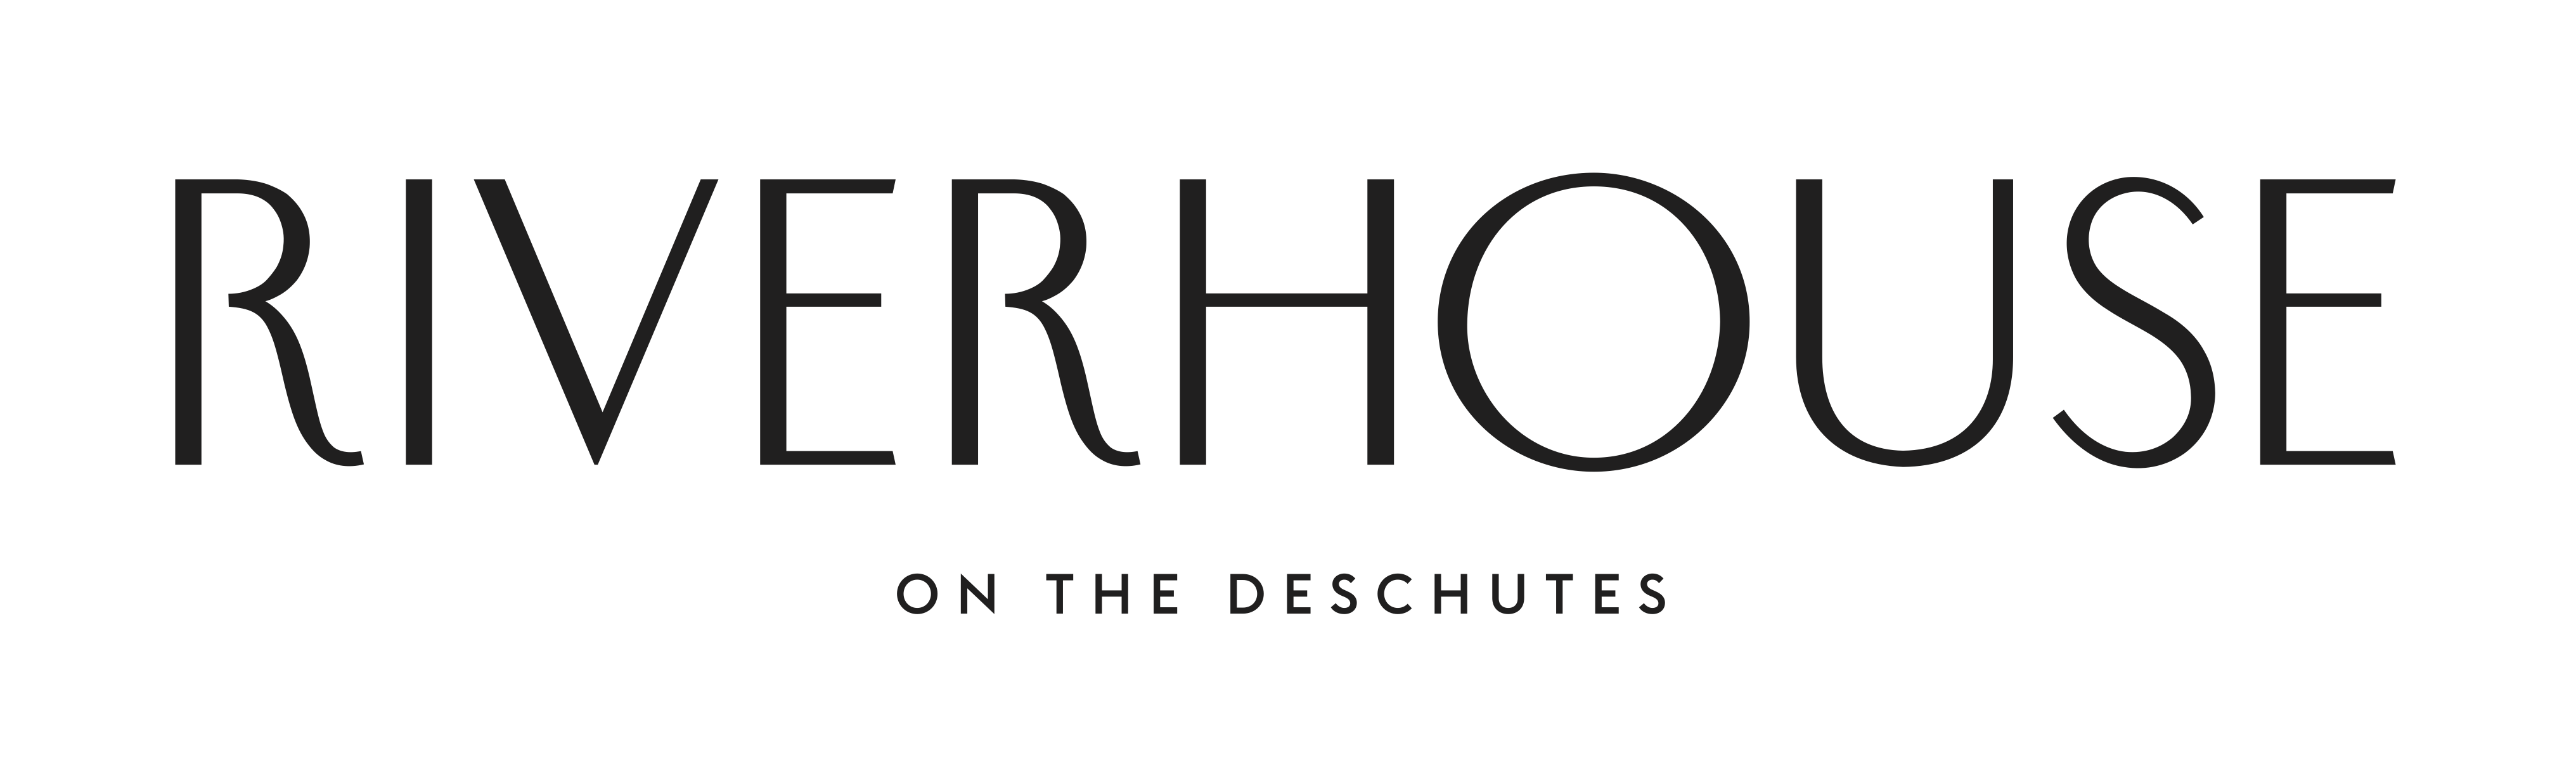 River House Logo - Riverhouse on the Deschutes, Bend, OR Jobs